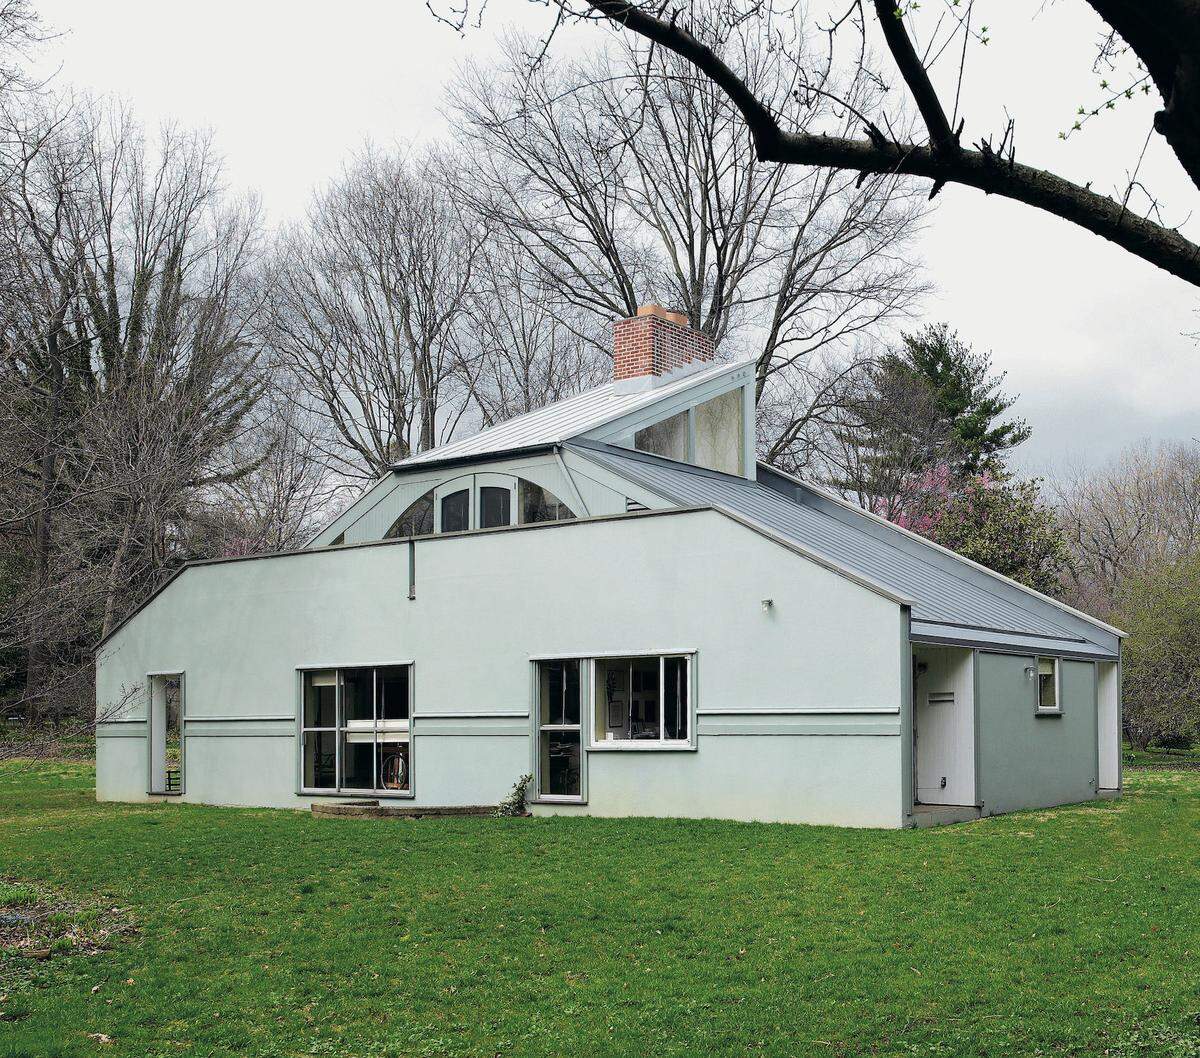 Das Haus, das Robert Venturi Mitte der 1960er-Jahre für seine Mutter Vanna baute, lebt von einer Reihe faszinierender Gegensätze. "Es ist gleichzeitig komplex und einfach, offen und geschlossen, groß und klein", schrieb er dazu.